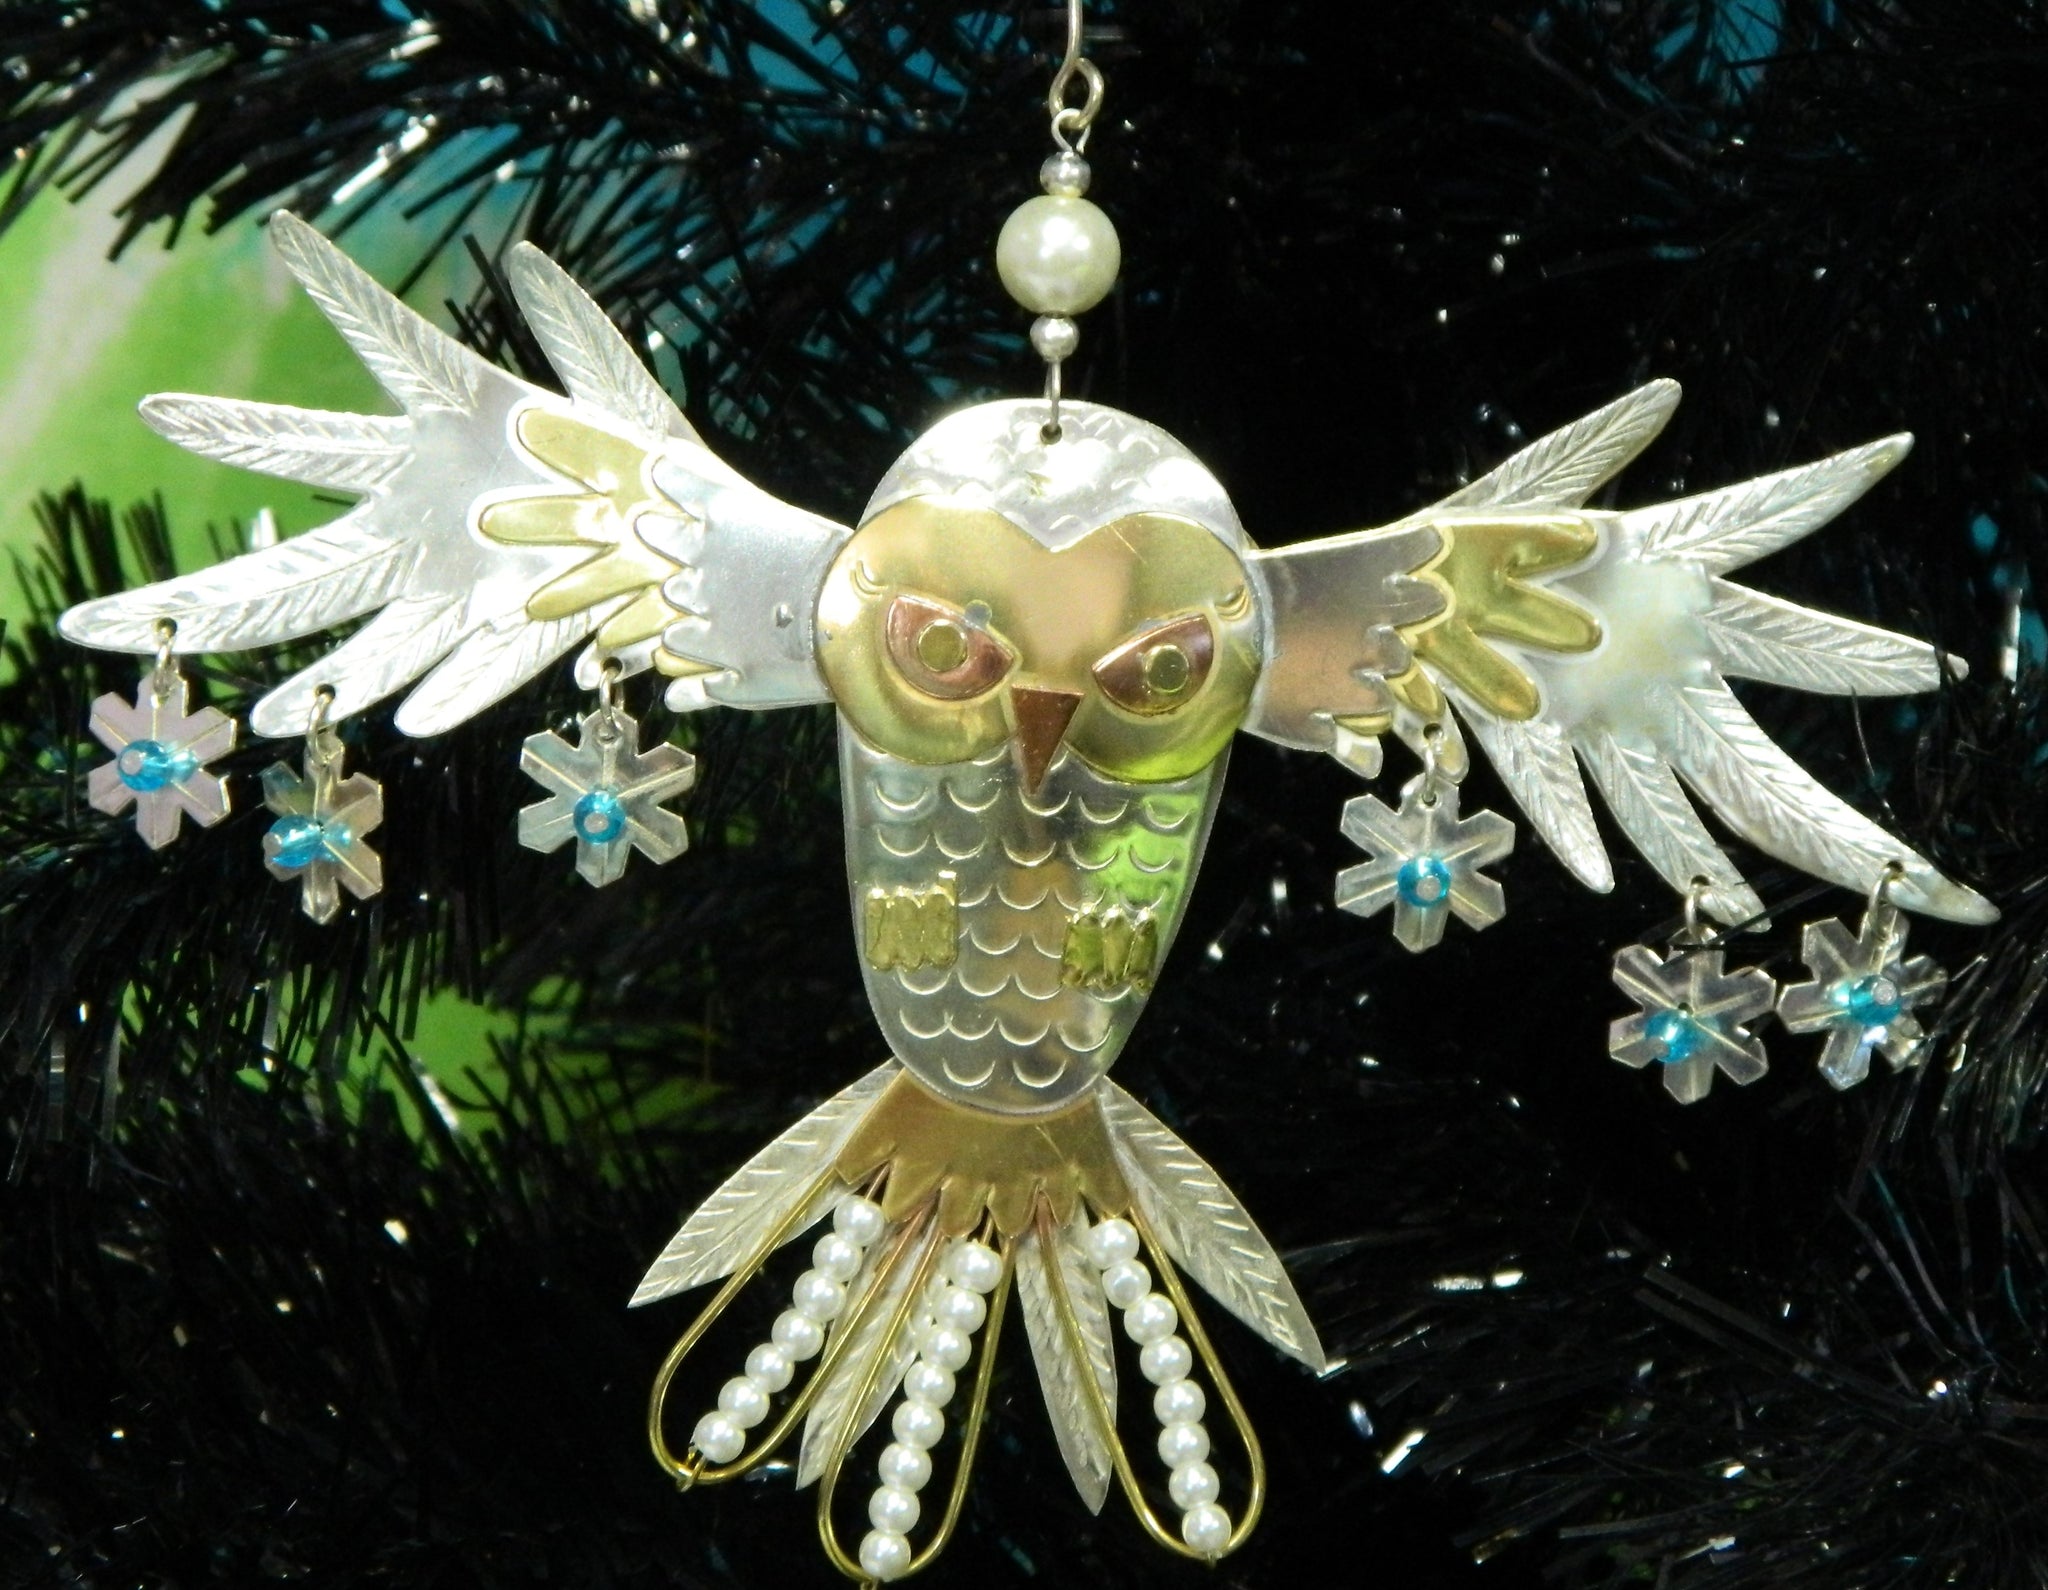 Snowy Owl Ornament Yule Christmas